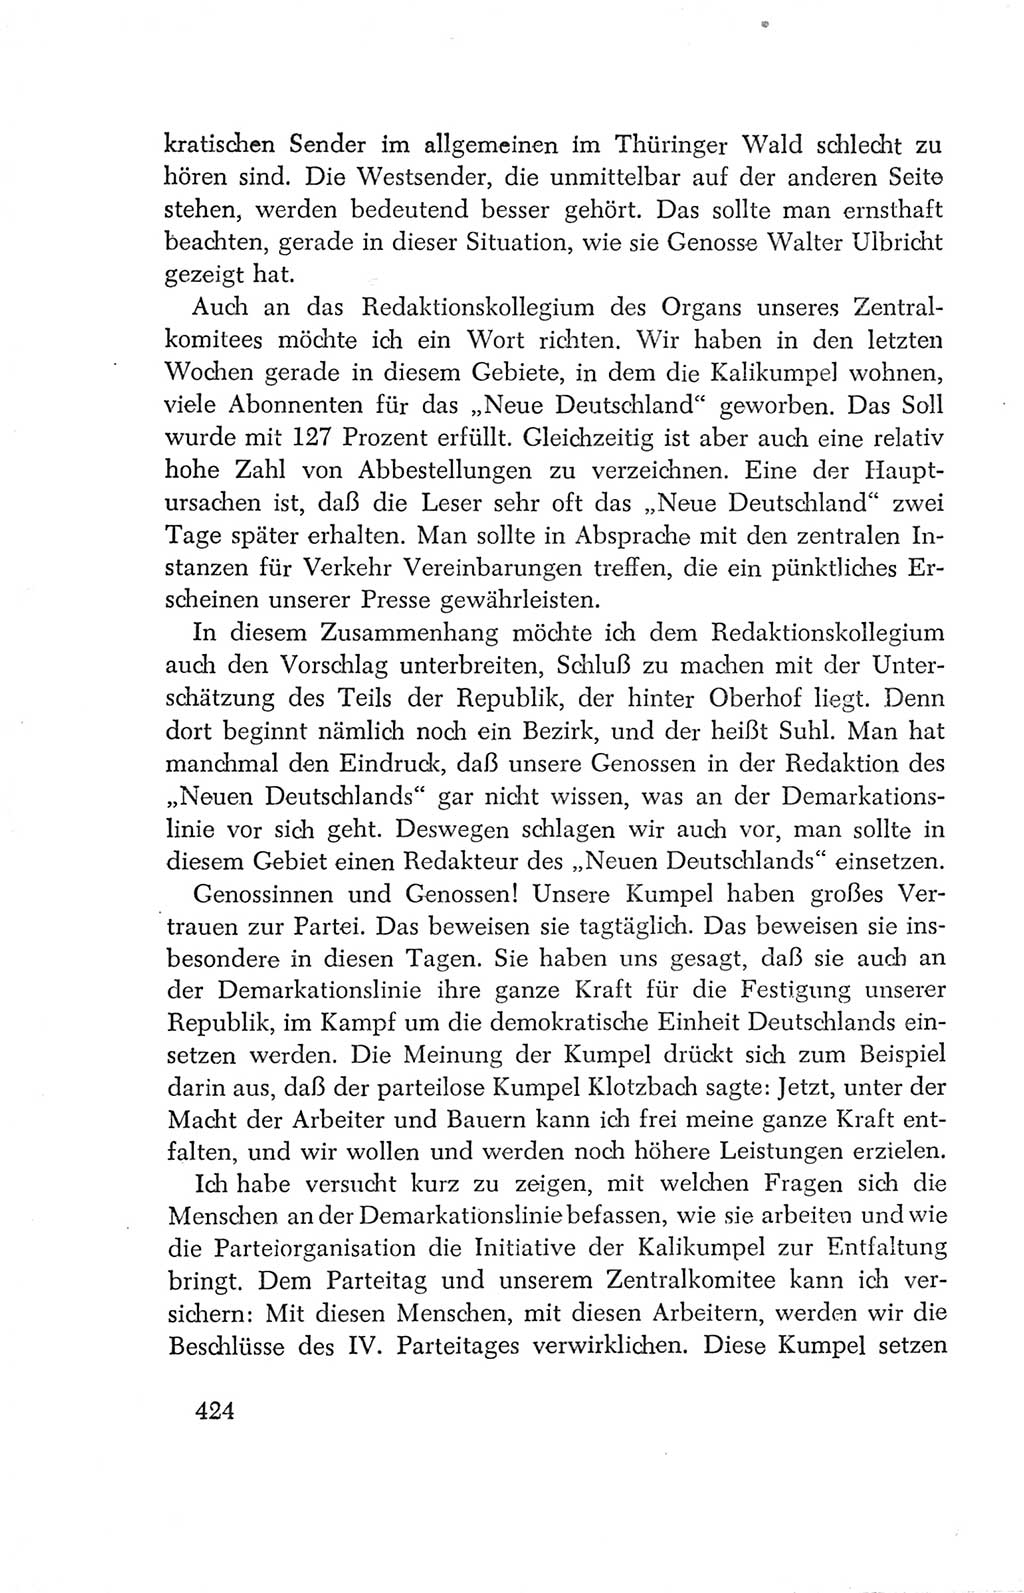 Protokoll der Verhandlungen des Ⅳ. Parteitages der Sozialistischen Einheitspartei Deutschlands (SED) [Deutsche Demokratische Republik (DDR)] 1954, Seite 424